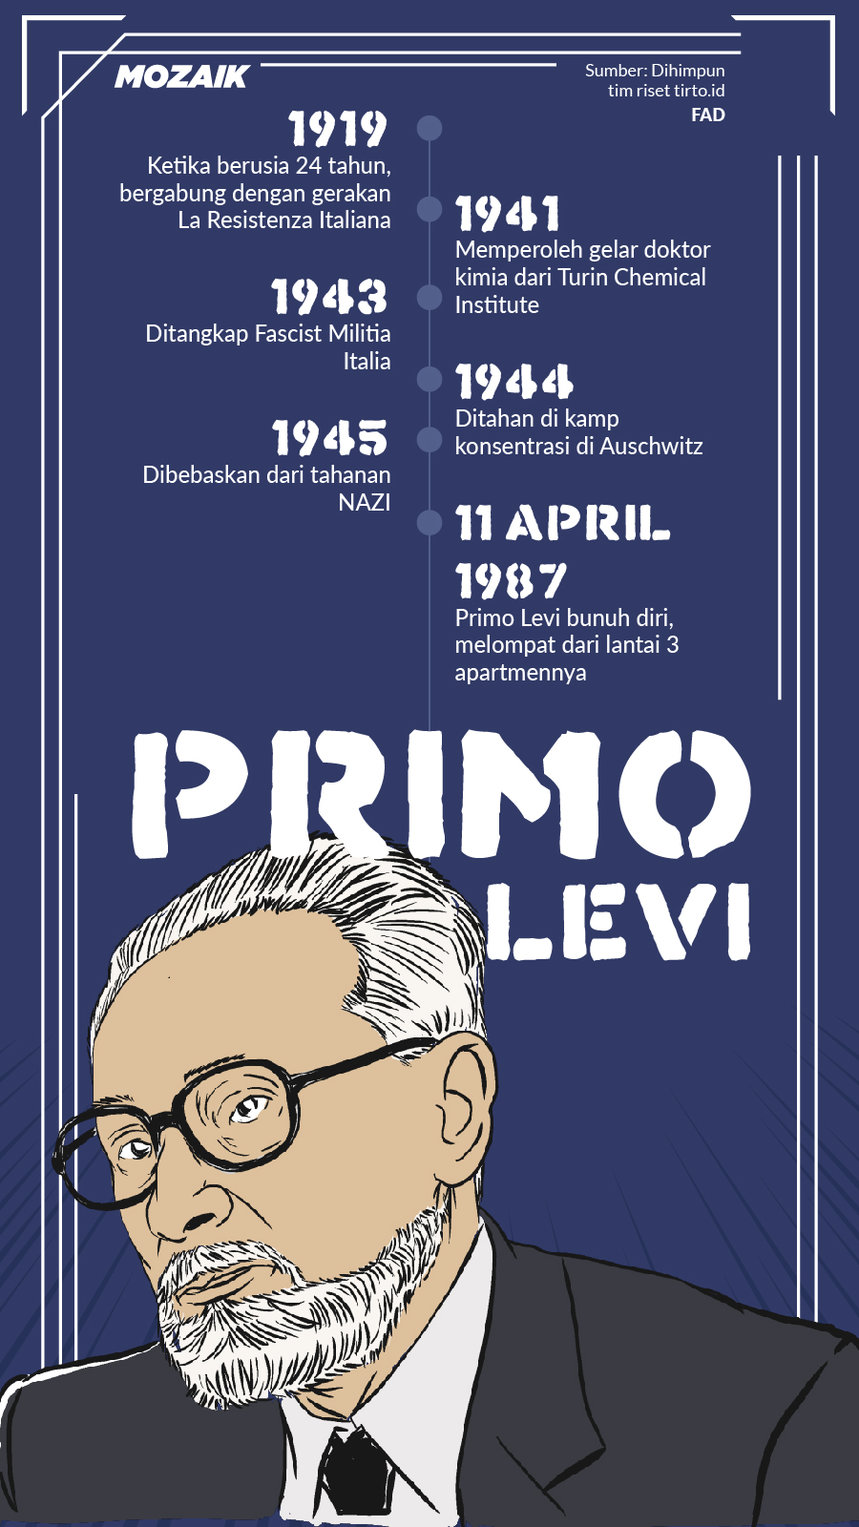 Infografik Mozaik Primo Levi